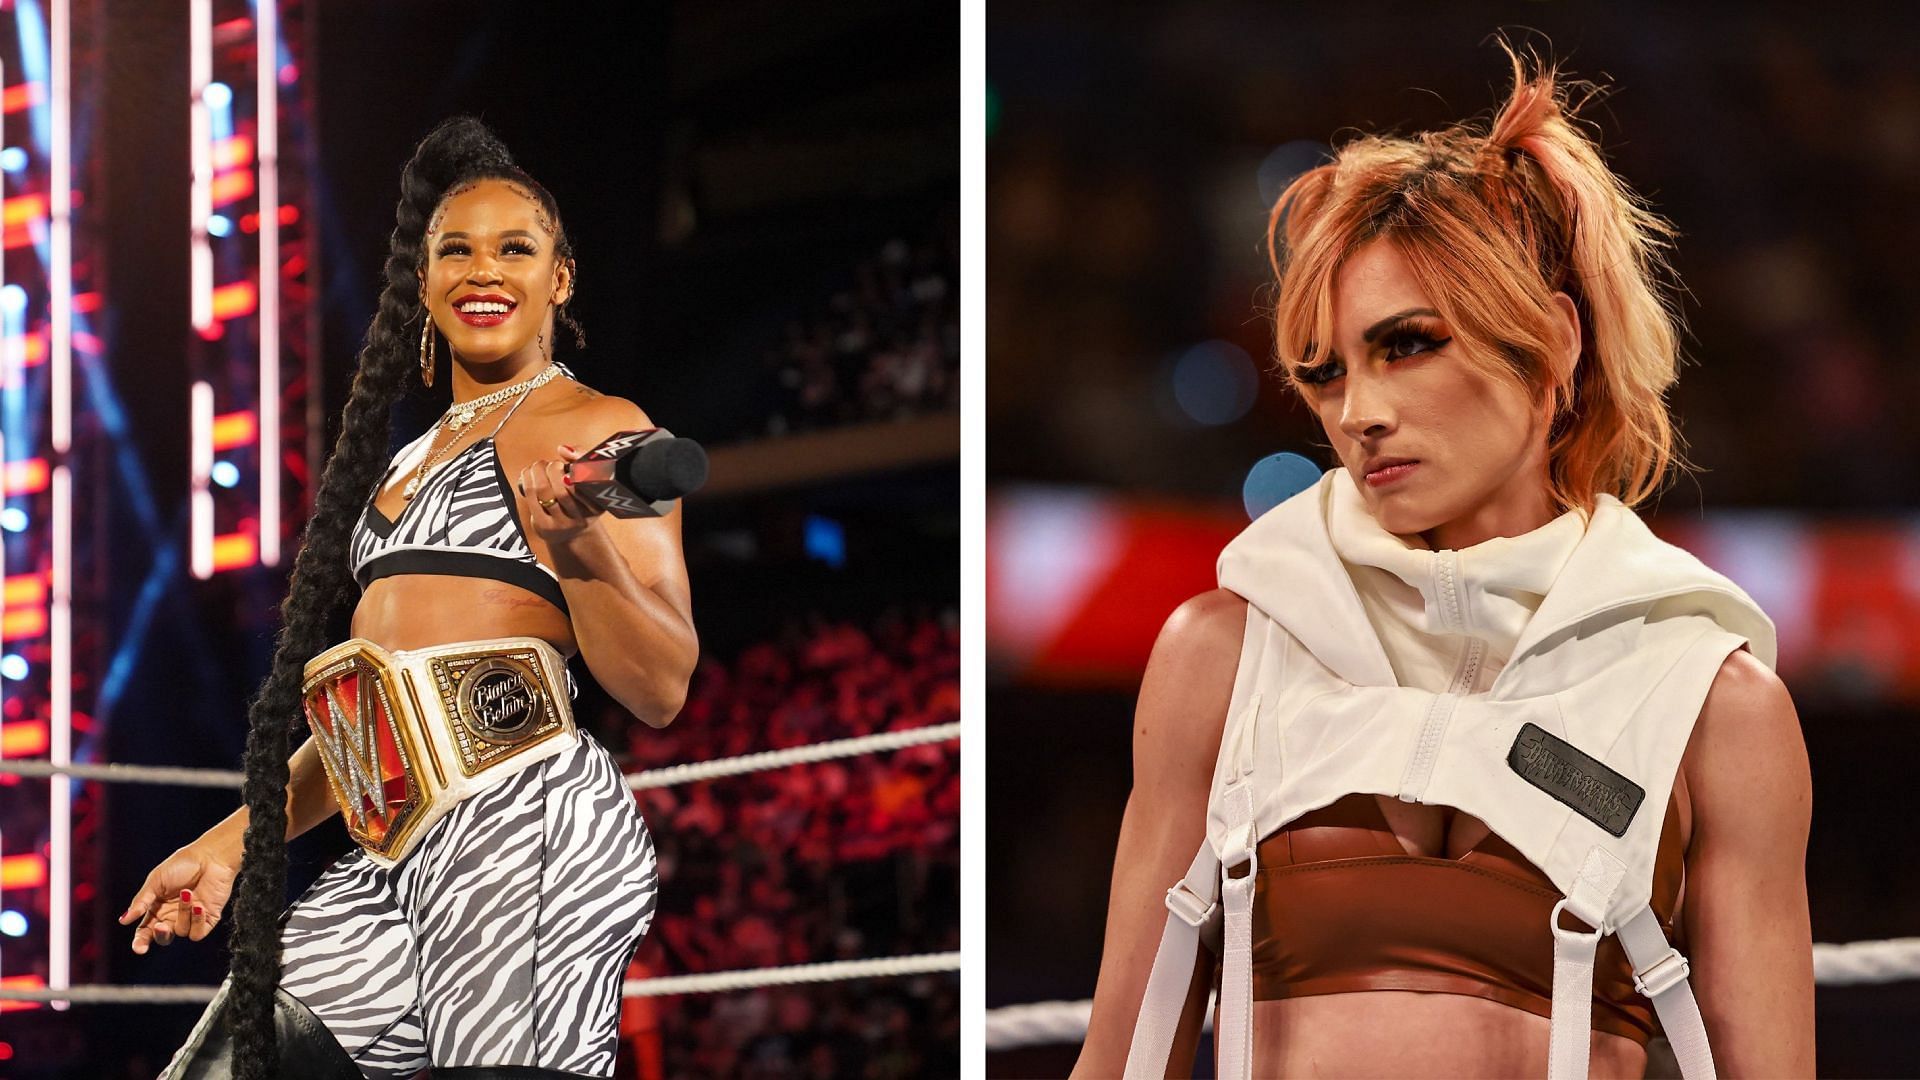 Bianca Belair and Becky Lynch will battle at WWE SummerSlam